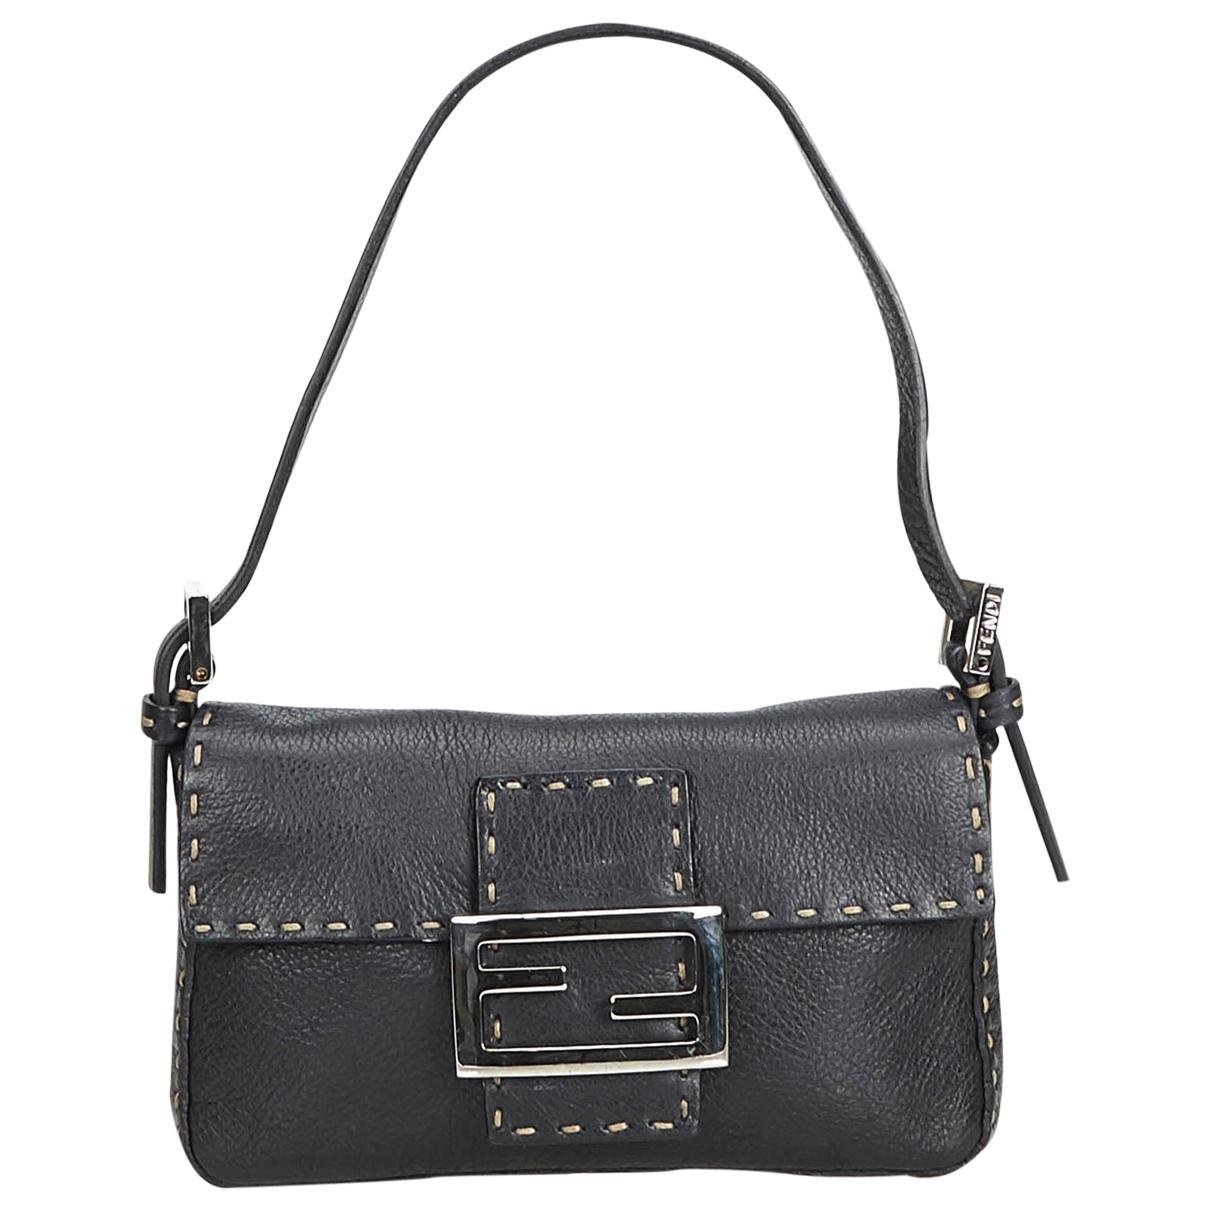 Fendi Vintage Baguette Black Leather Handbag in Black - Lyst